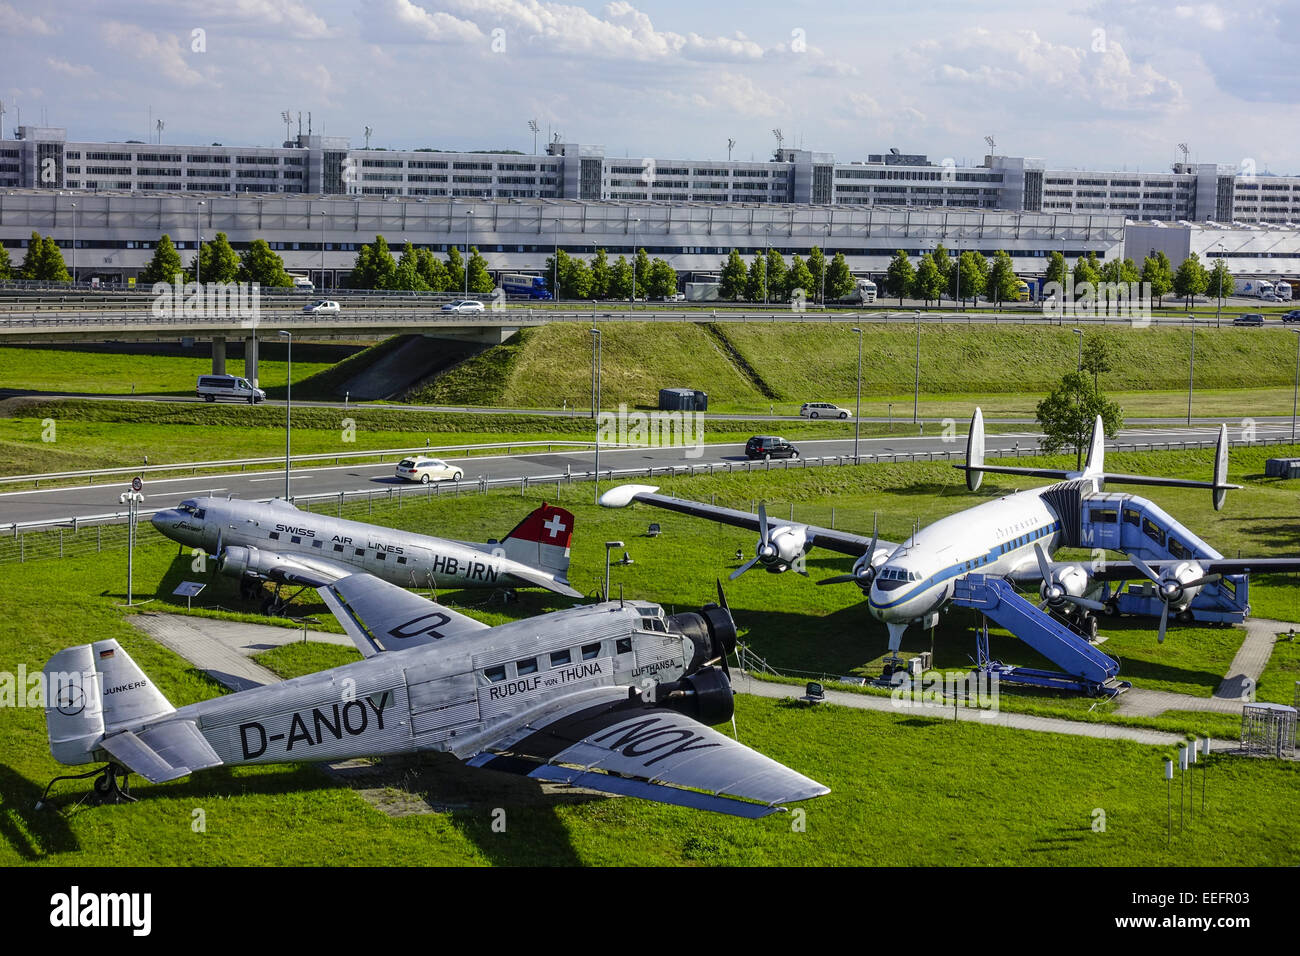 Historische Flugzeuge am Besucherpark Flughafen München II, München, Bayern, Deutschland, Historic aircraft on visitor Park at M Stock Photo